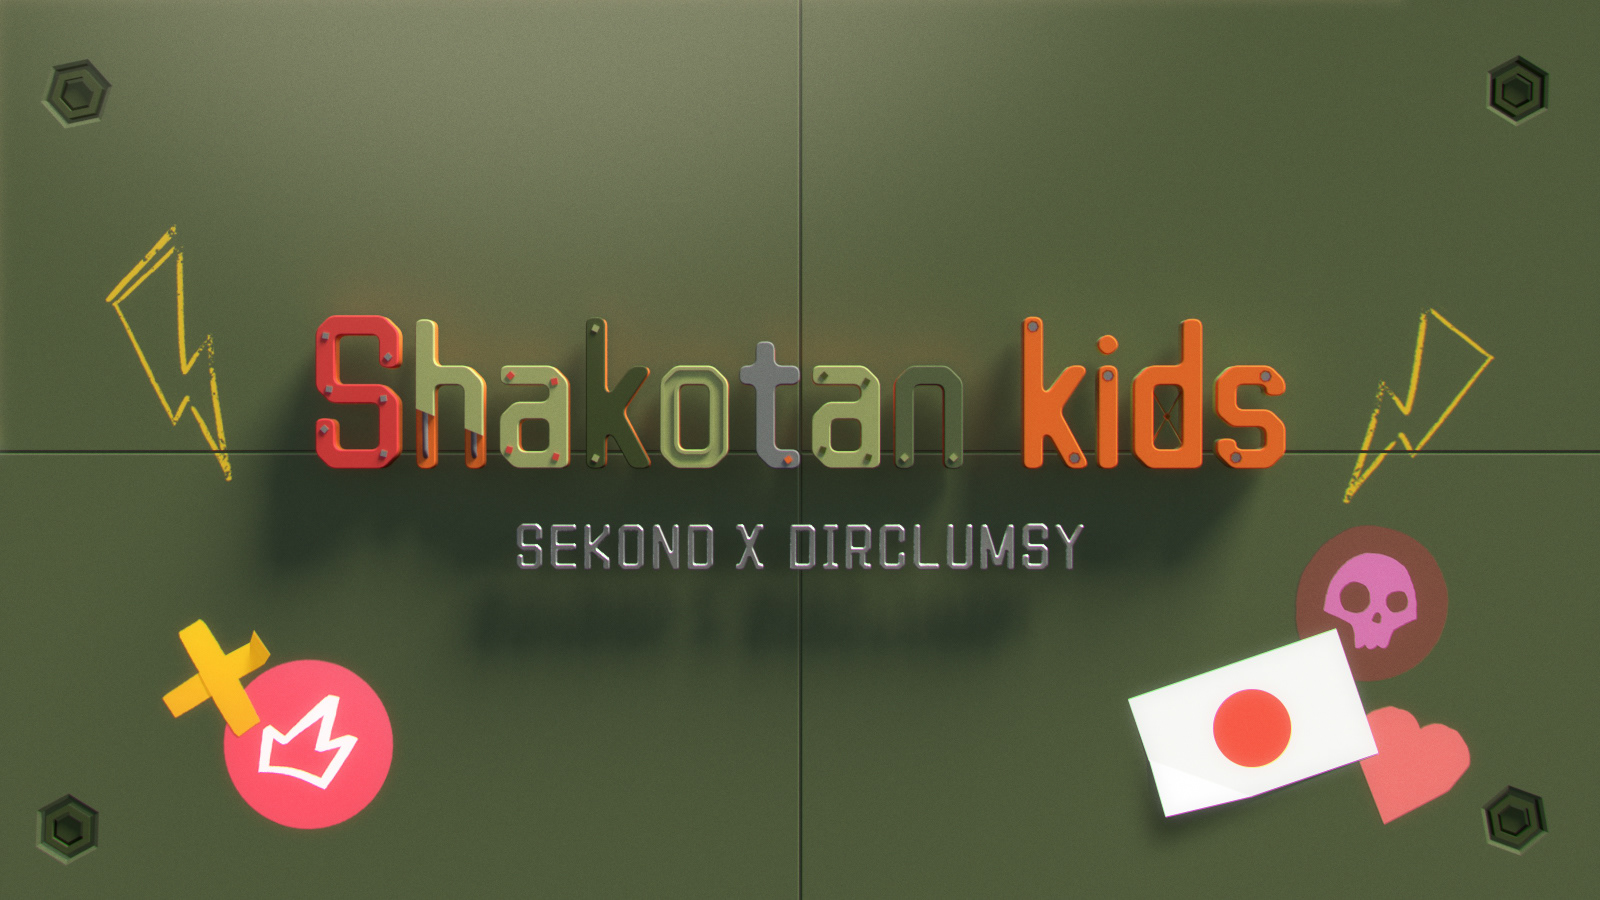 Shakotan Kids on Behance93a1ad89050933.5df6949e0ea90.jpg